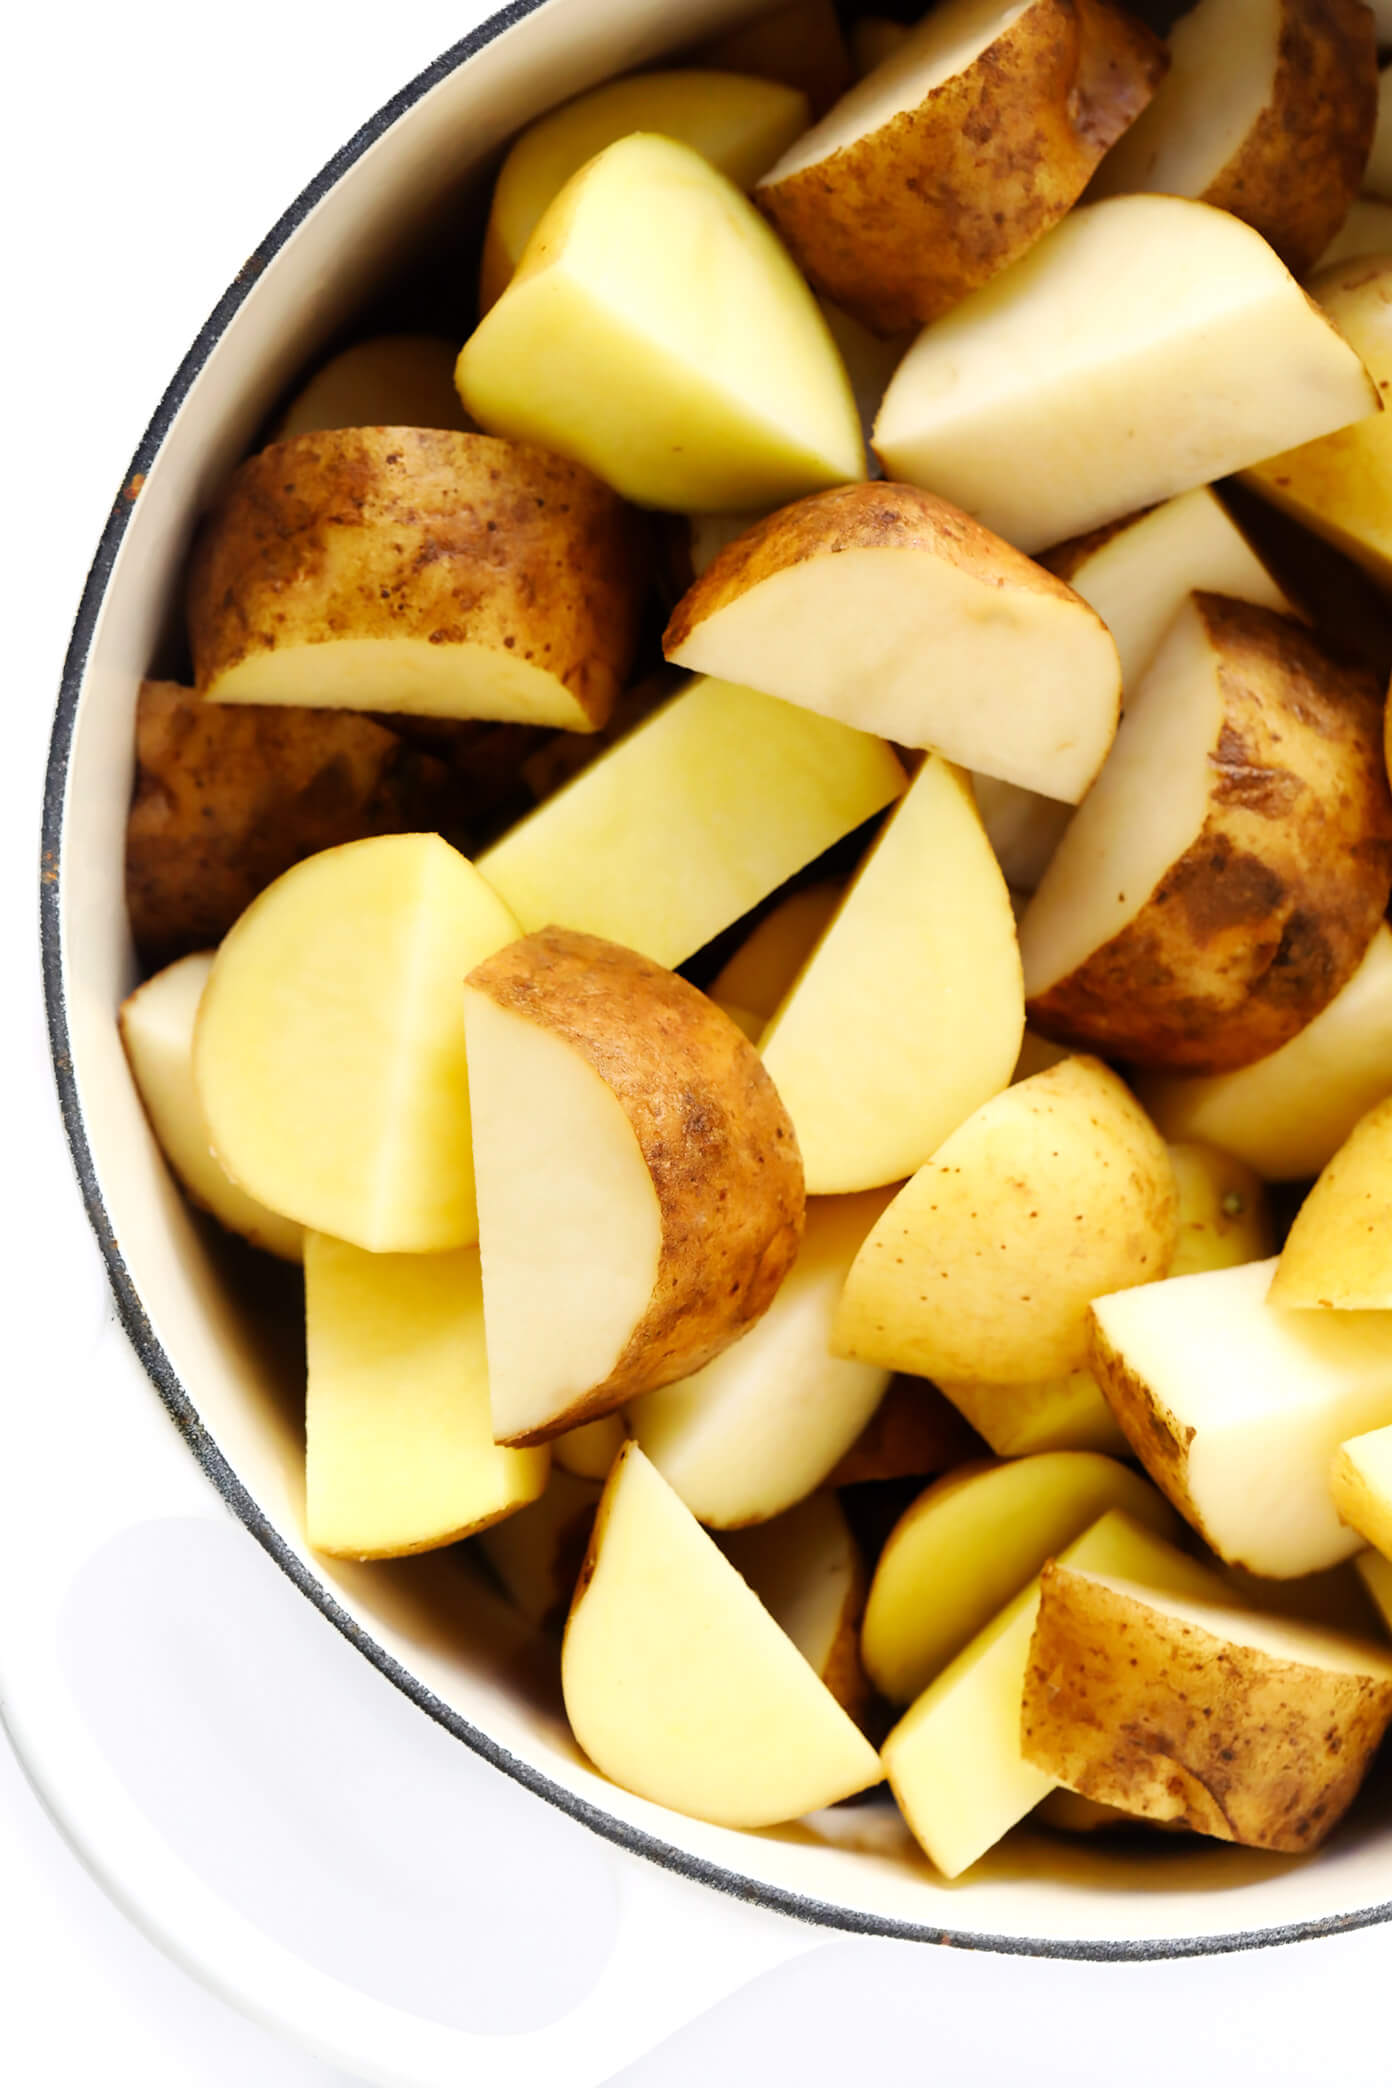 育空黄金土豆和黄褐色土豆|土豆泥食谱